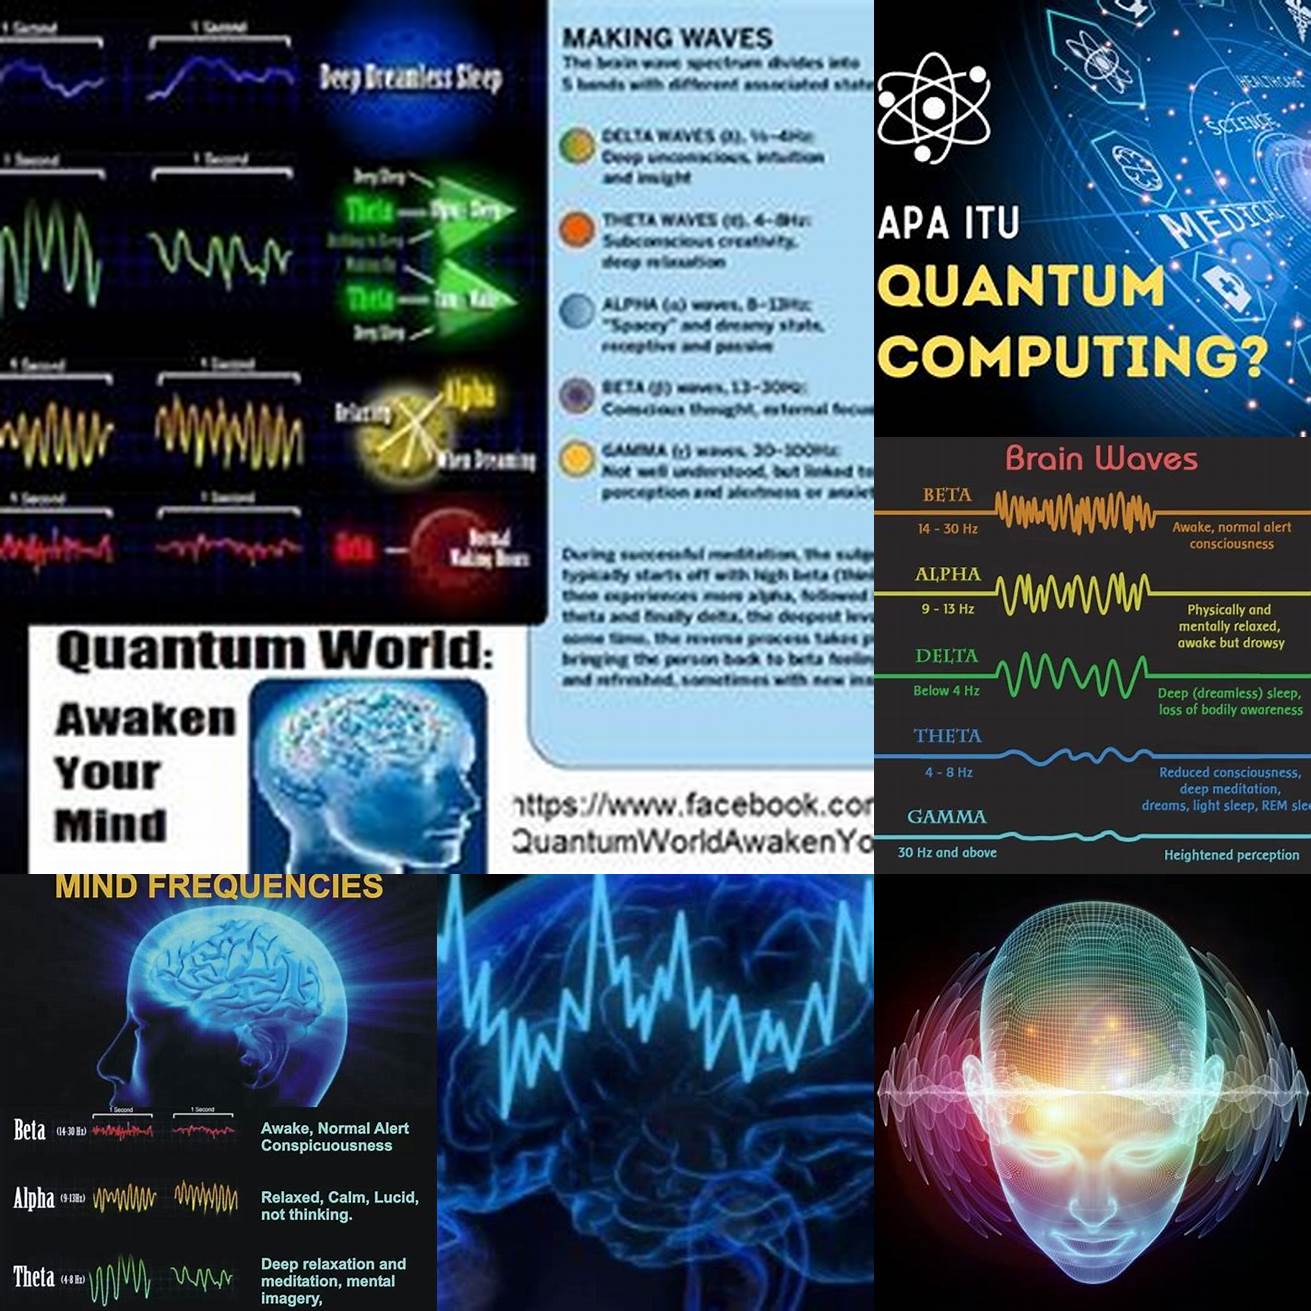 Q Apa itu Quantum Brainwaves